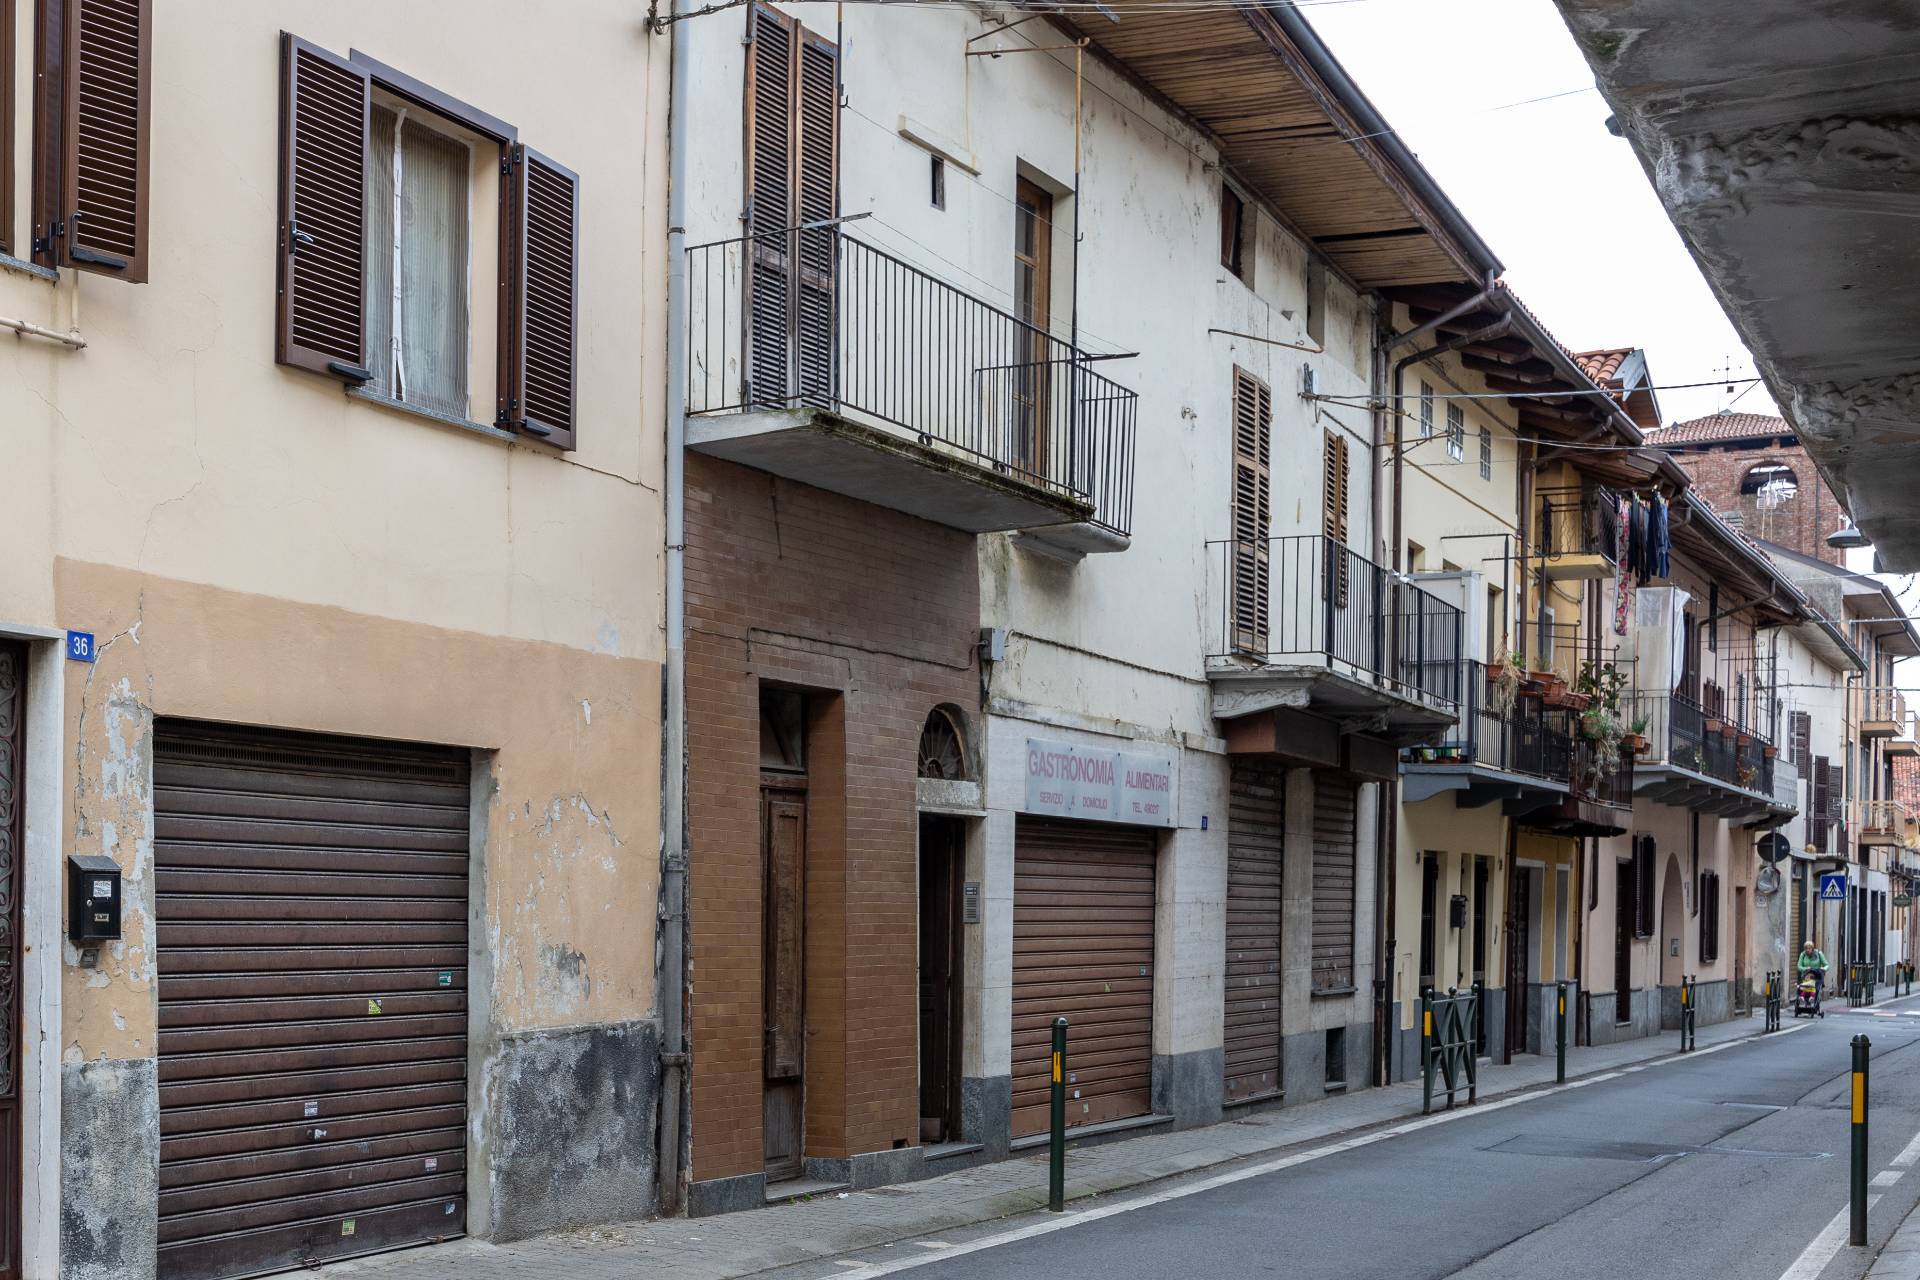 Palazzo / Stabile in vendita a Feletto, 10 locali, zona Località: FelettoCanavese, prezzo € 89.000 | CambioCasa.it